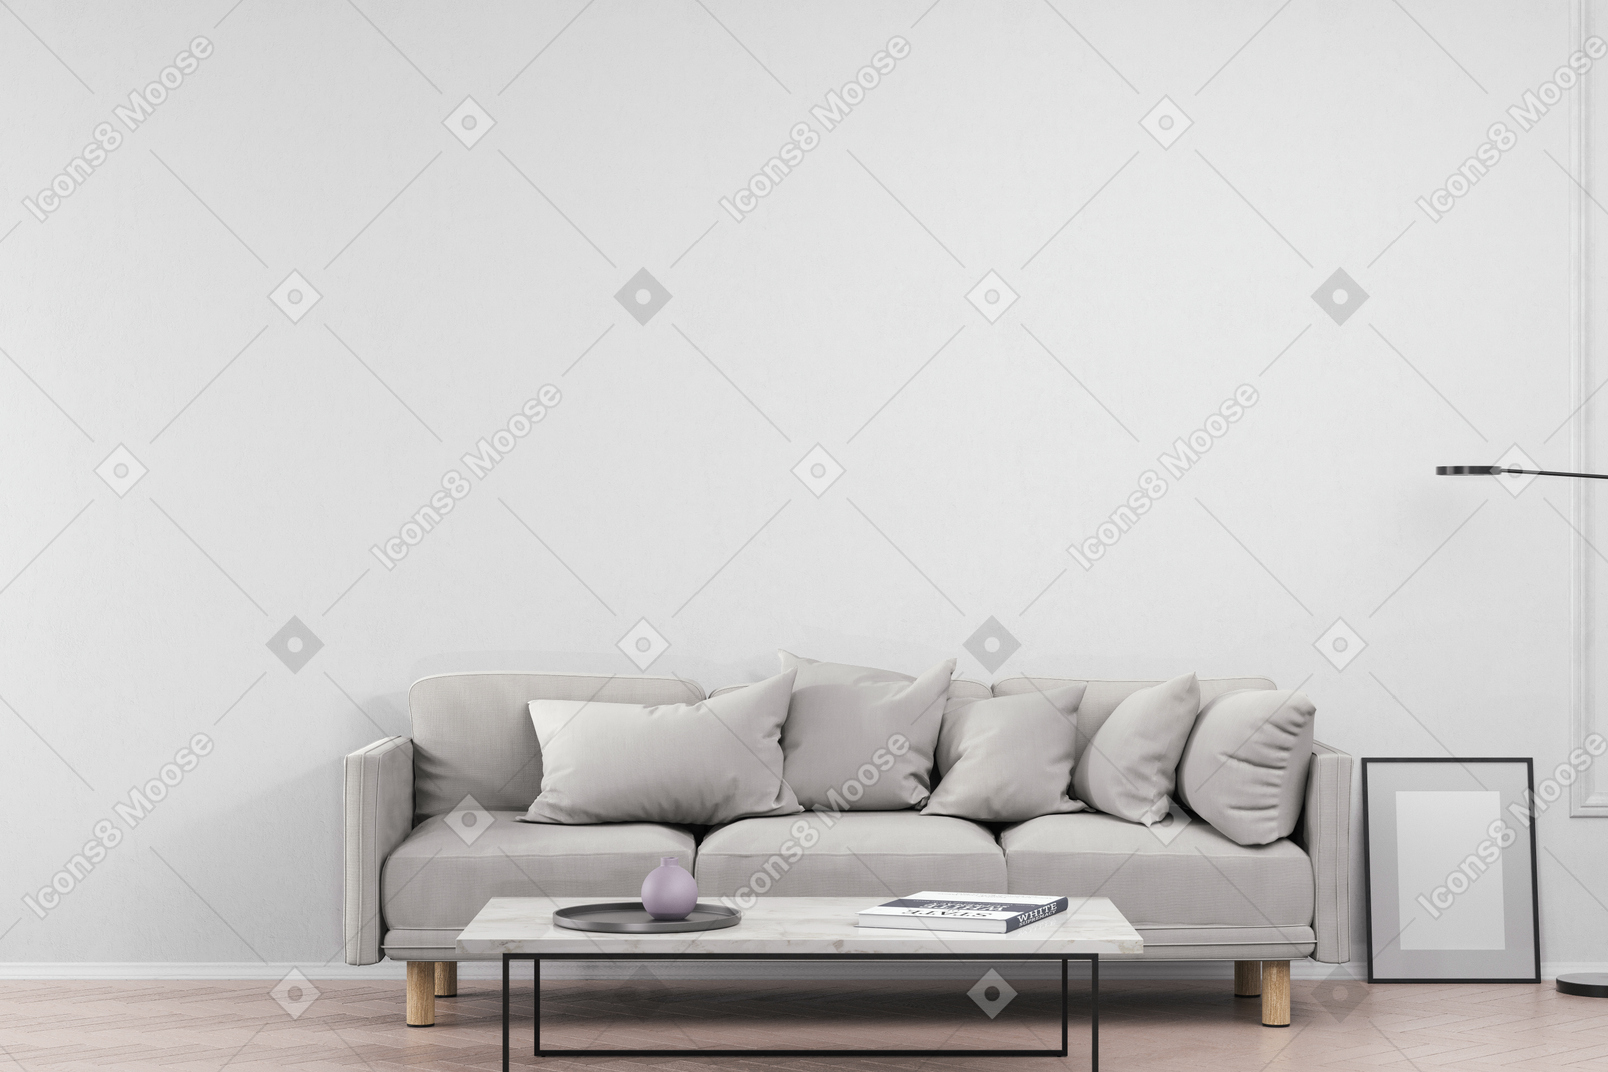 Sala com sofá cinza e mesa de centro com itens de decoração